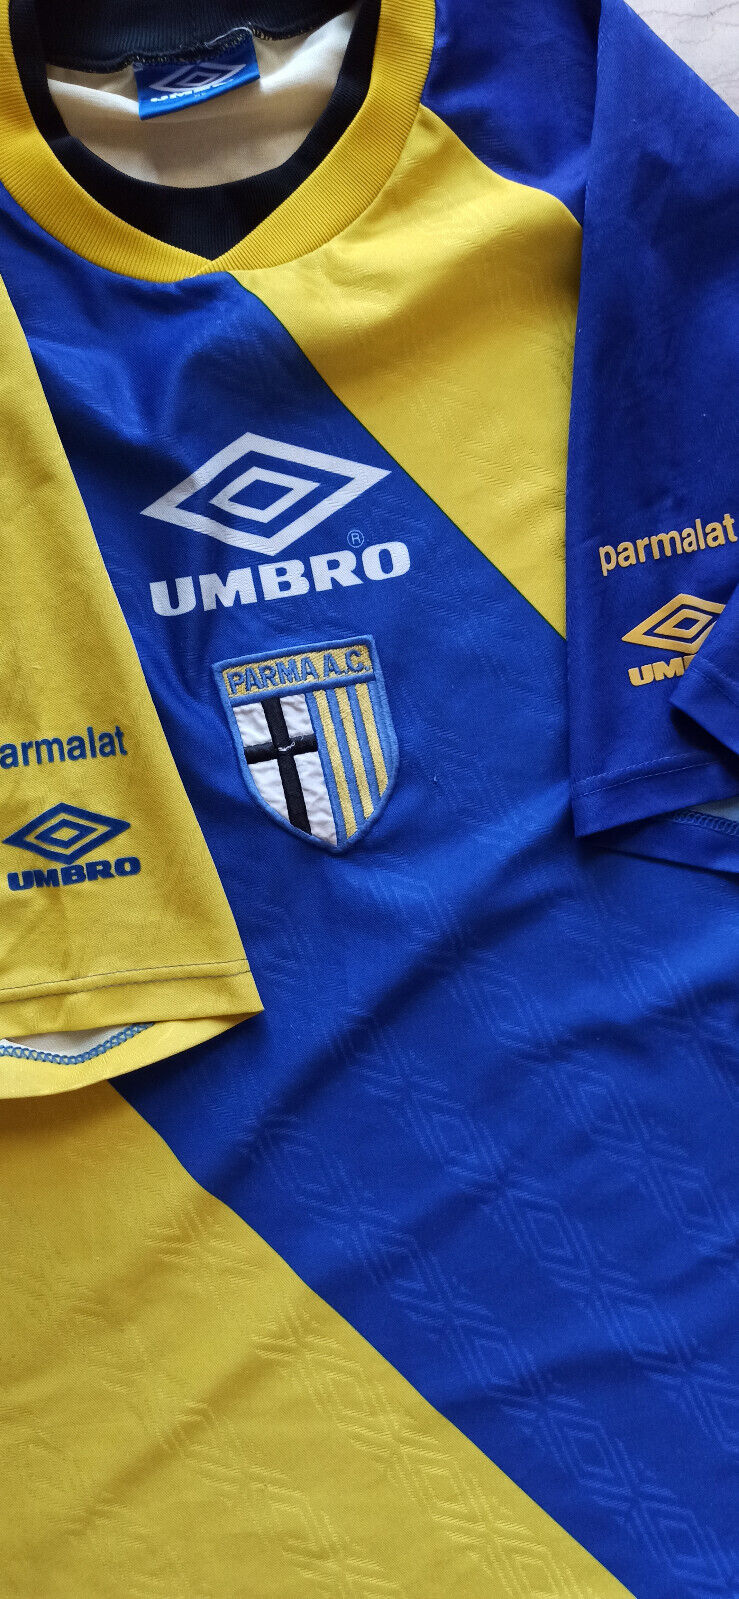 maglia calcio vintage AC Parma training Umbro parmalat Zola XL allenam